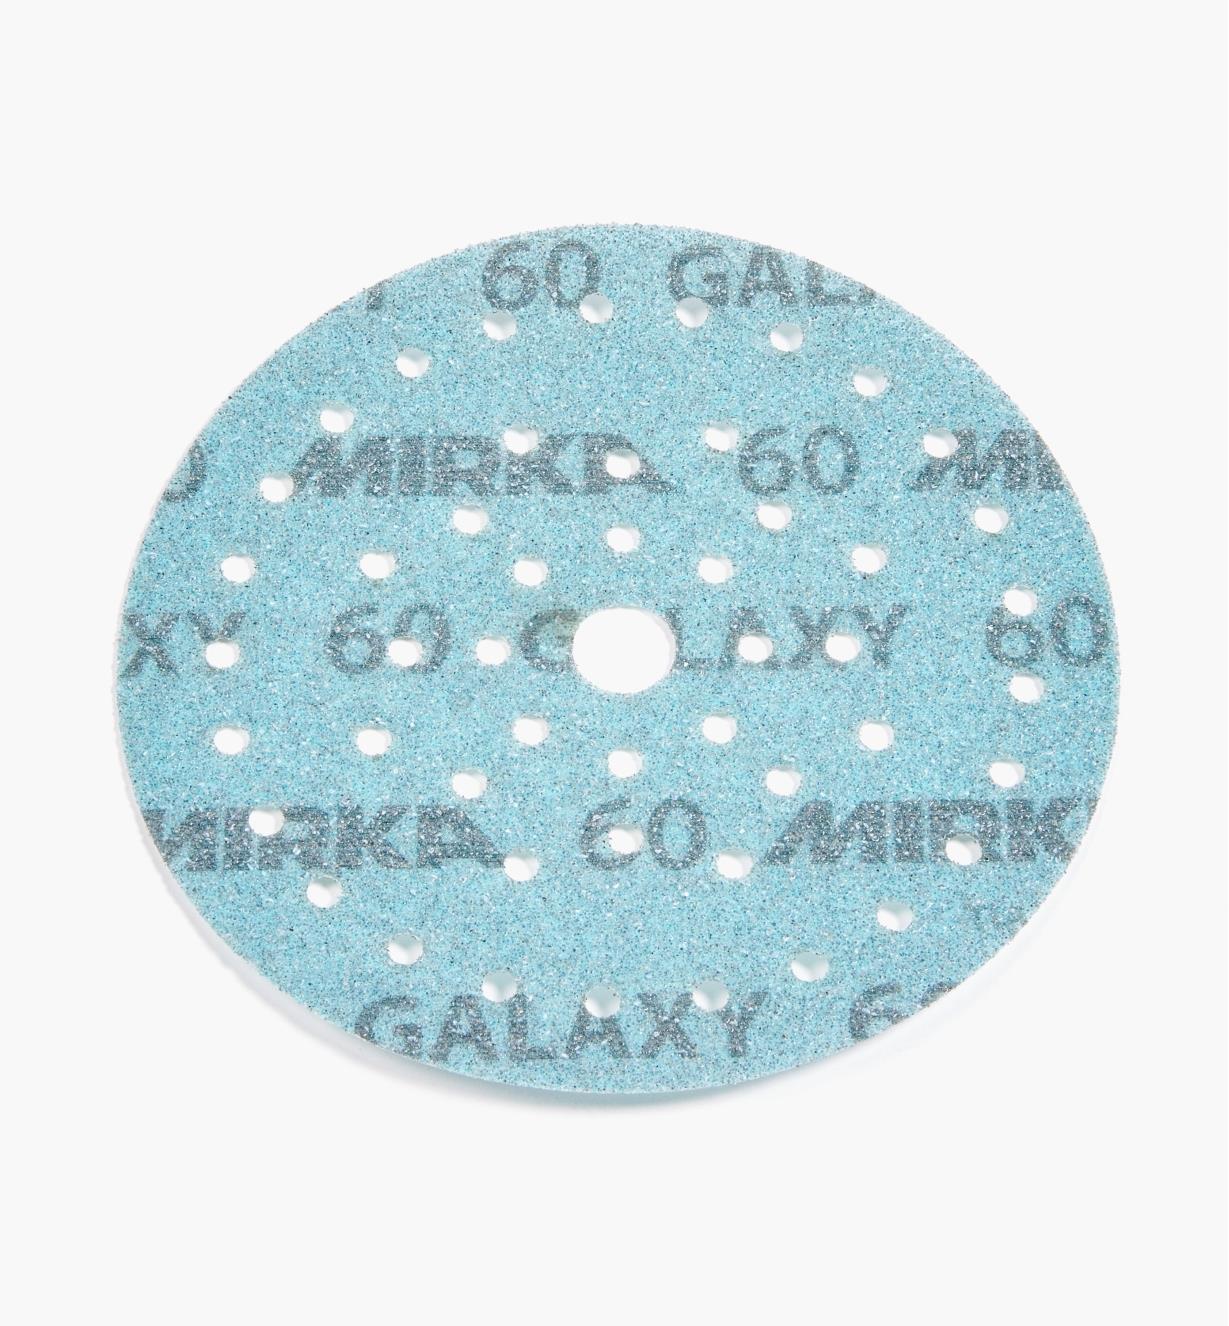 08K2141 - Disque abrasif autoagrippant Galaxy Multifit, 6 po, grain 60, l'unité